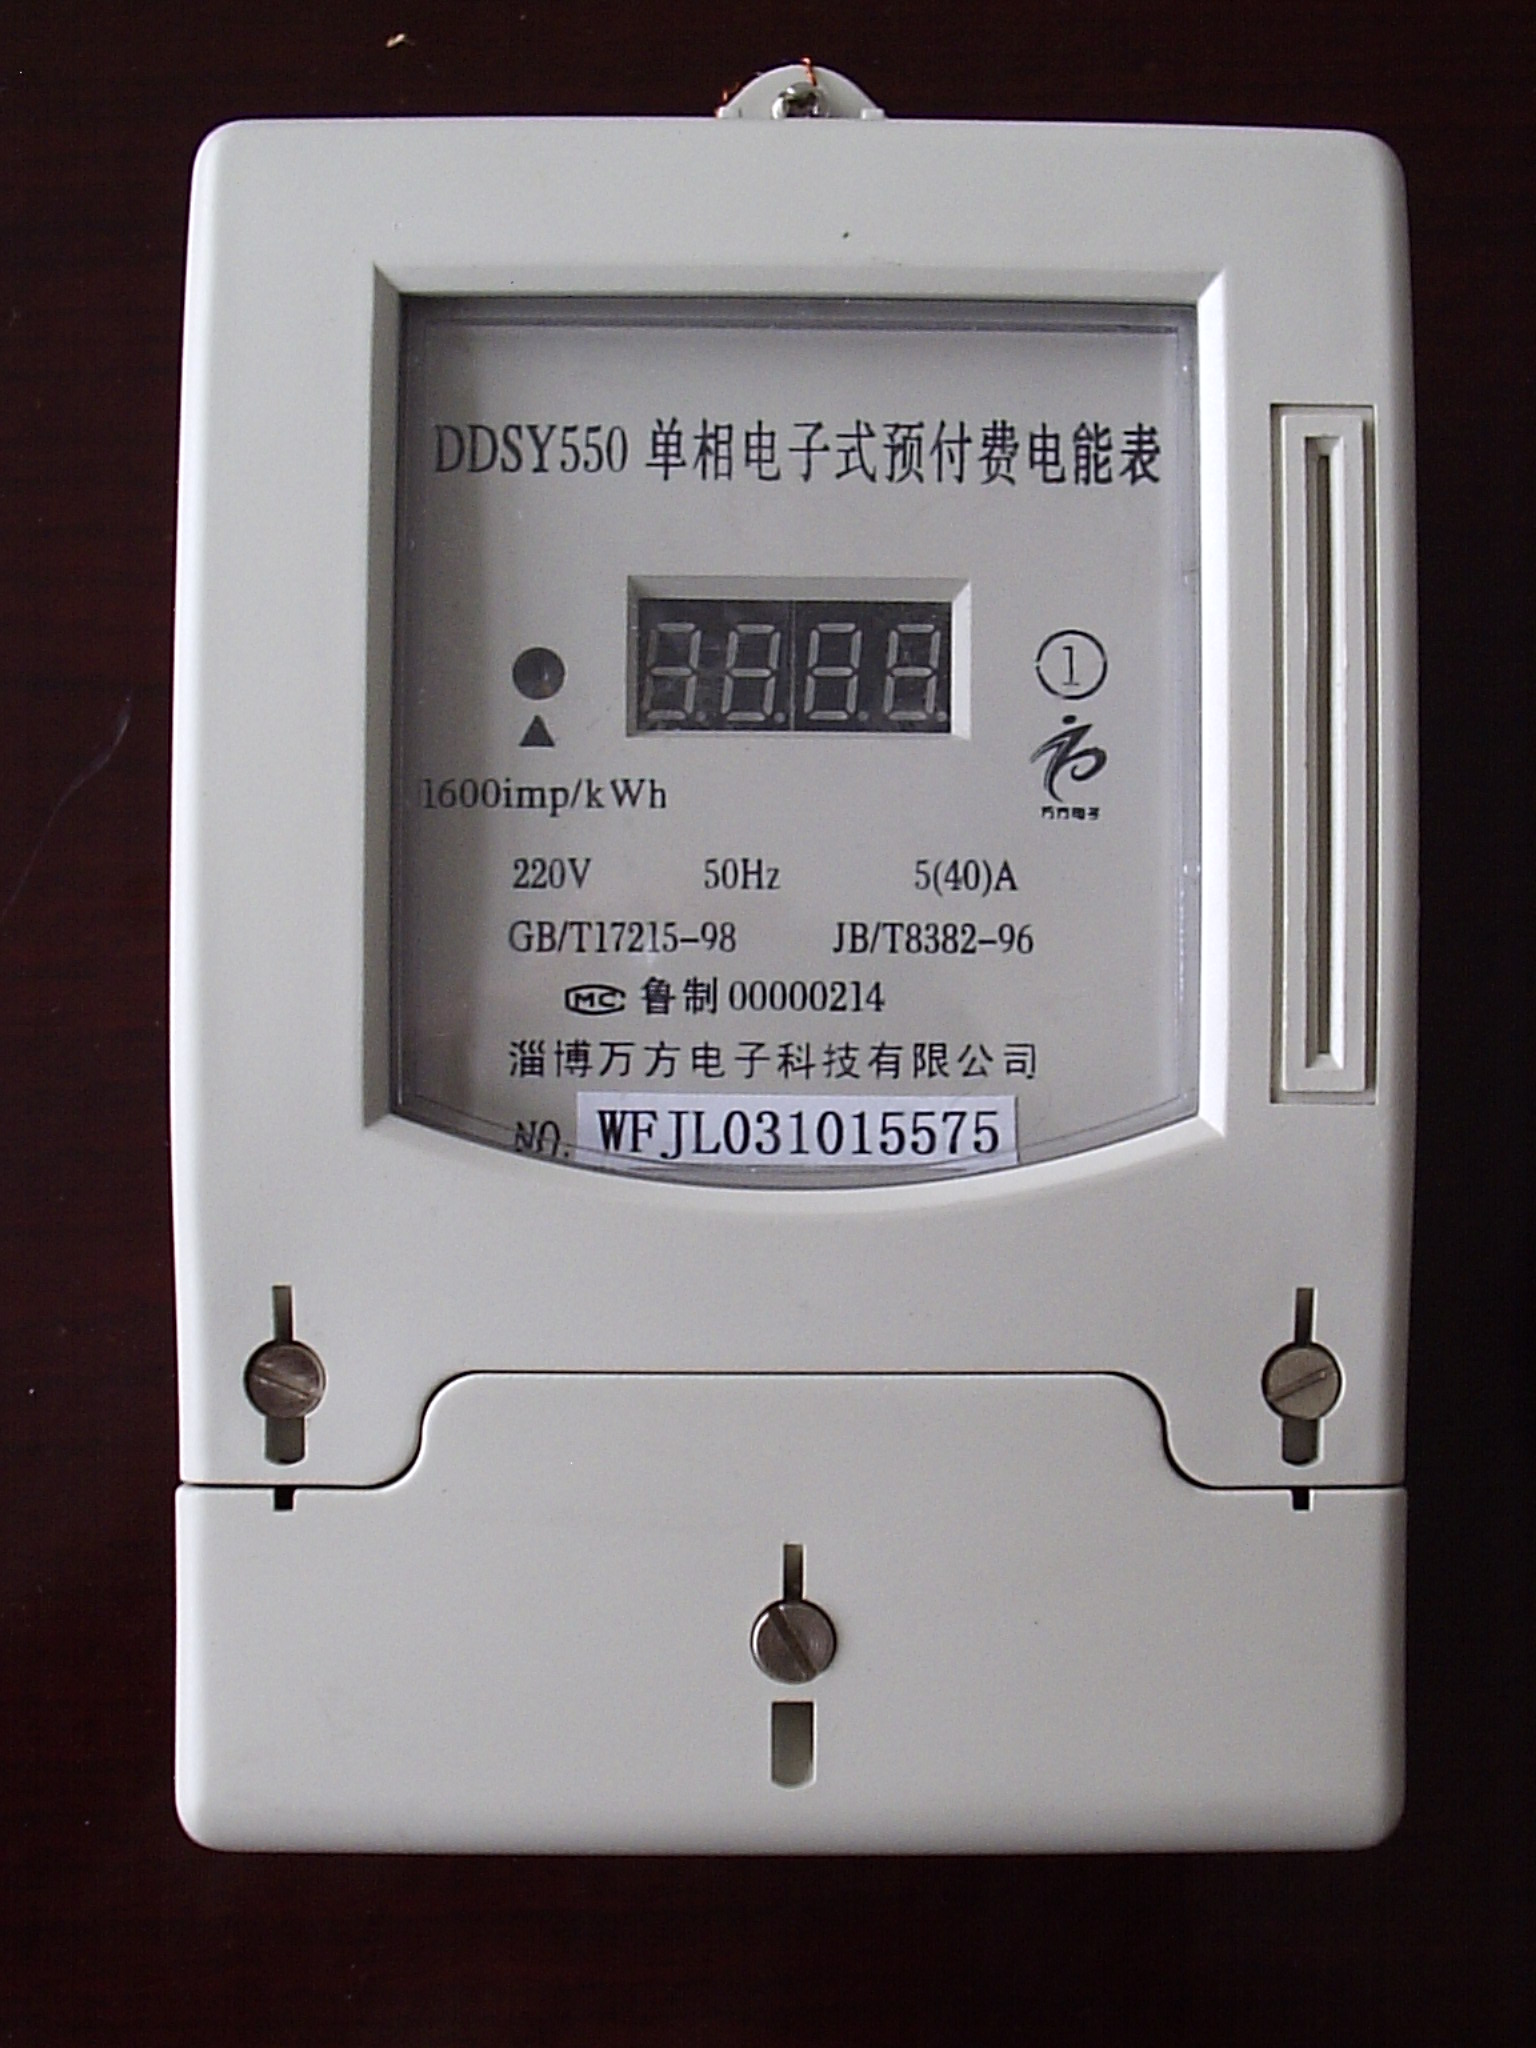 DDSY550单相电子式电能表